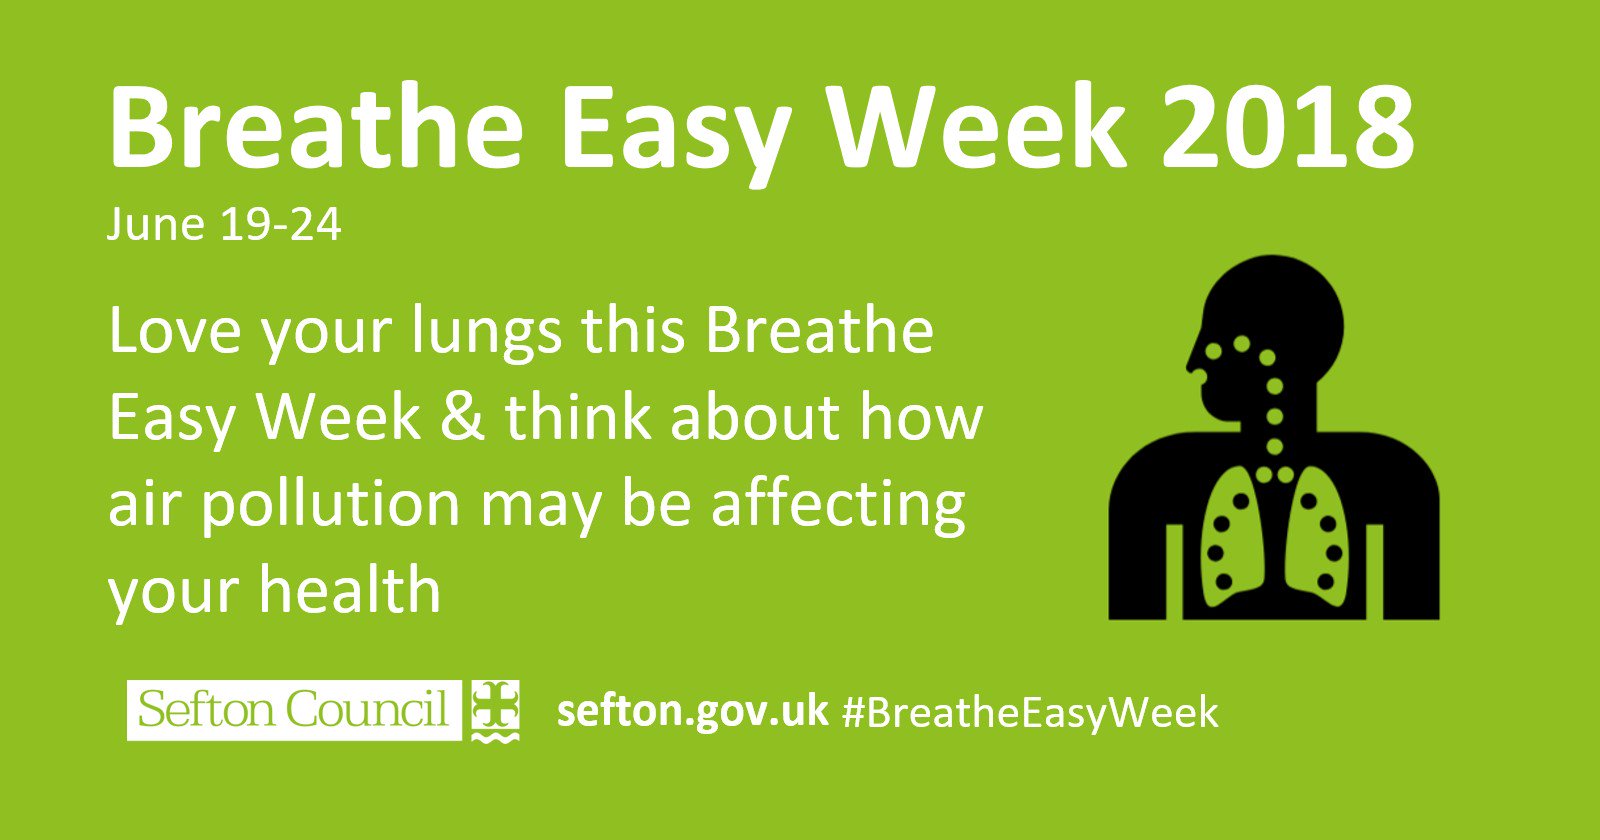 Breathe easy this week in Sefton!